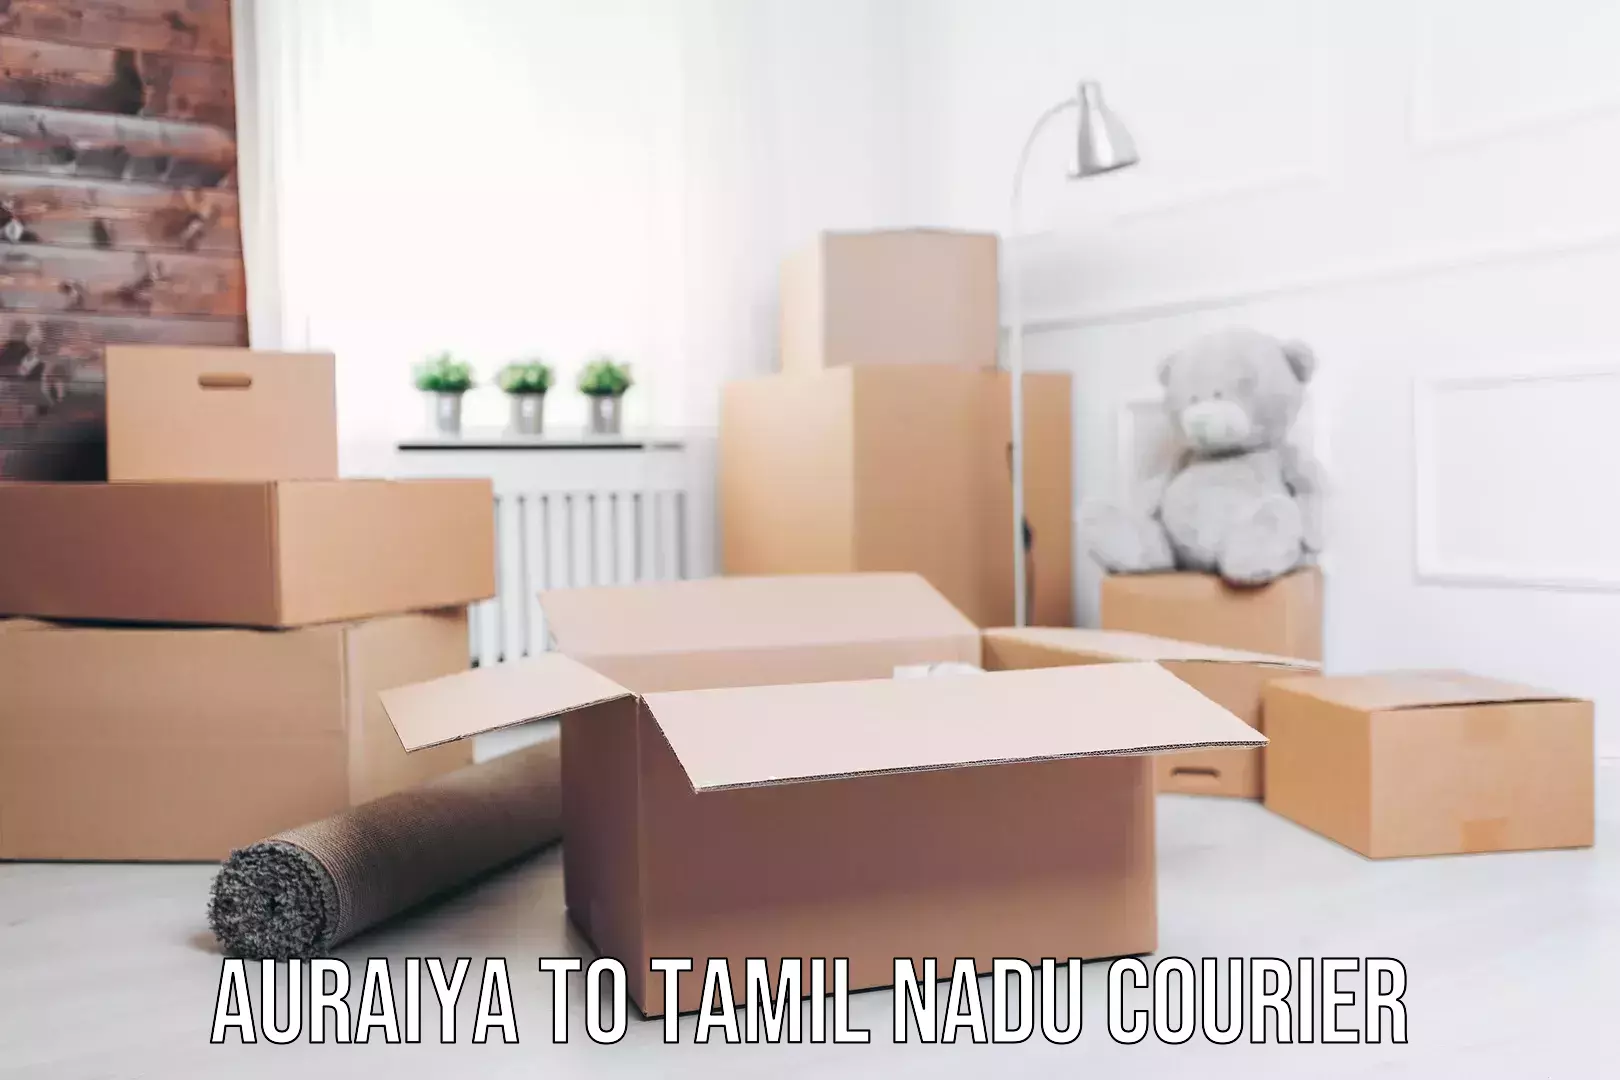 Cargo courier service Auraiya to Tamil Nadu